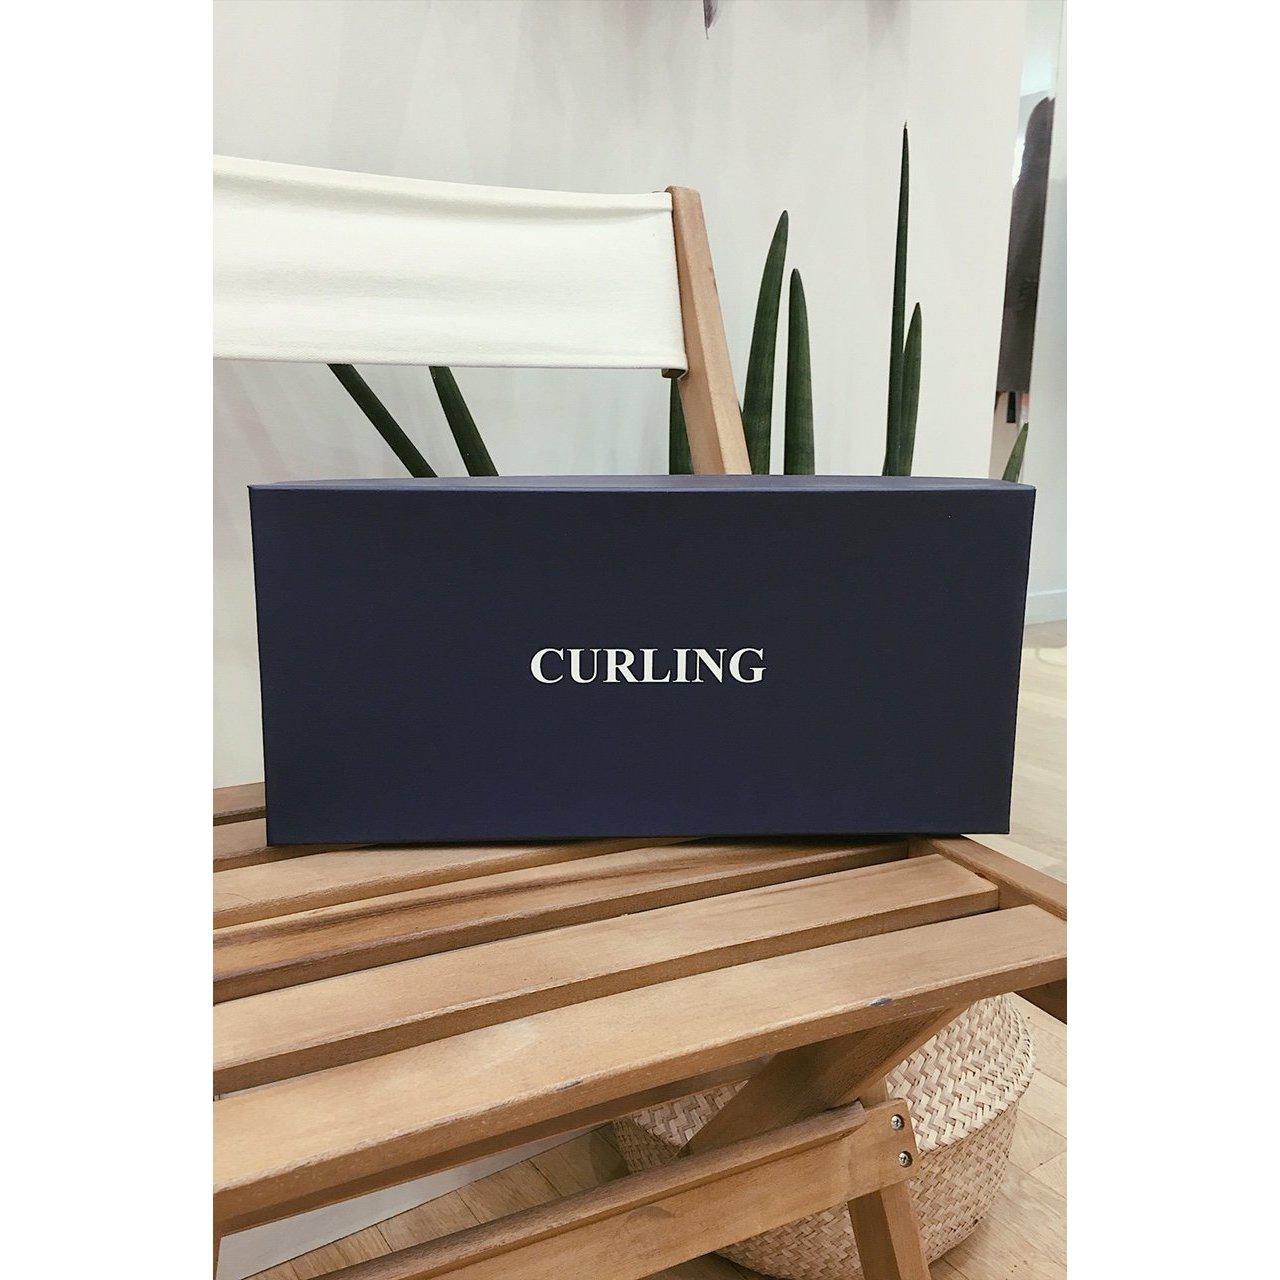 Le moc' Curling - marine-CHAUSSURES HOMME-Curling-Paris